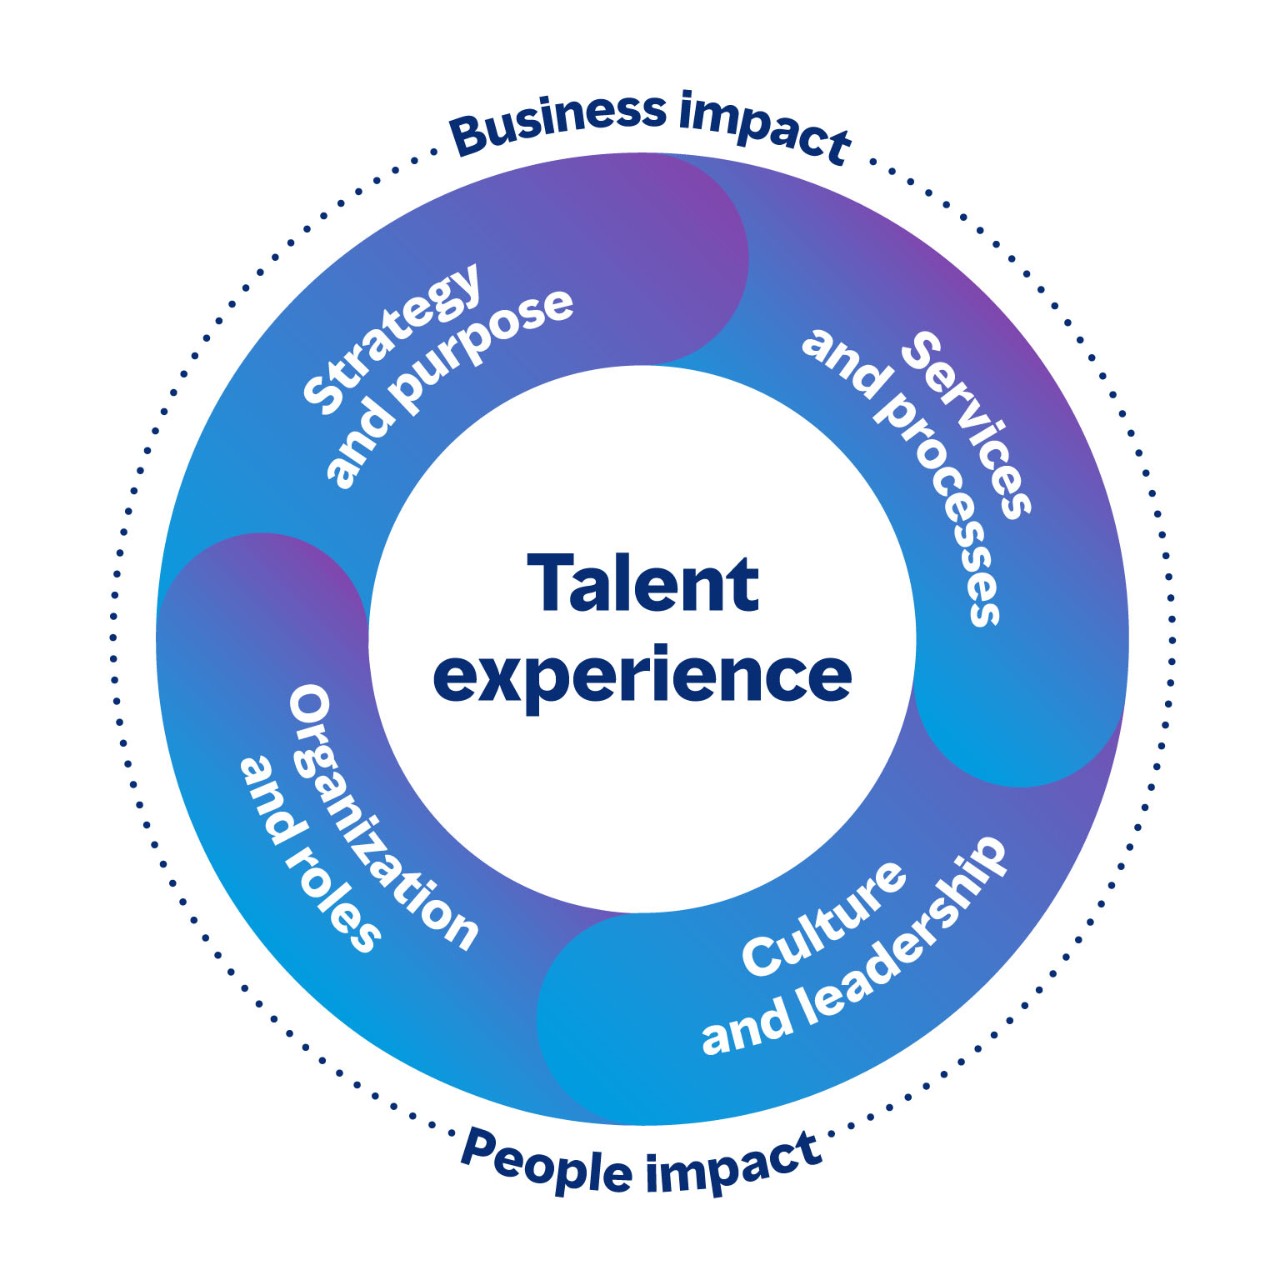 圓形圖片，顯示對業務和人員都有影響的人才經驗相關領域。這四個領域分別是策略與目的、服務與流程、文化與領導力、組織與職務。